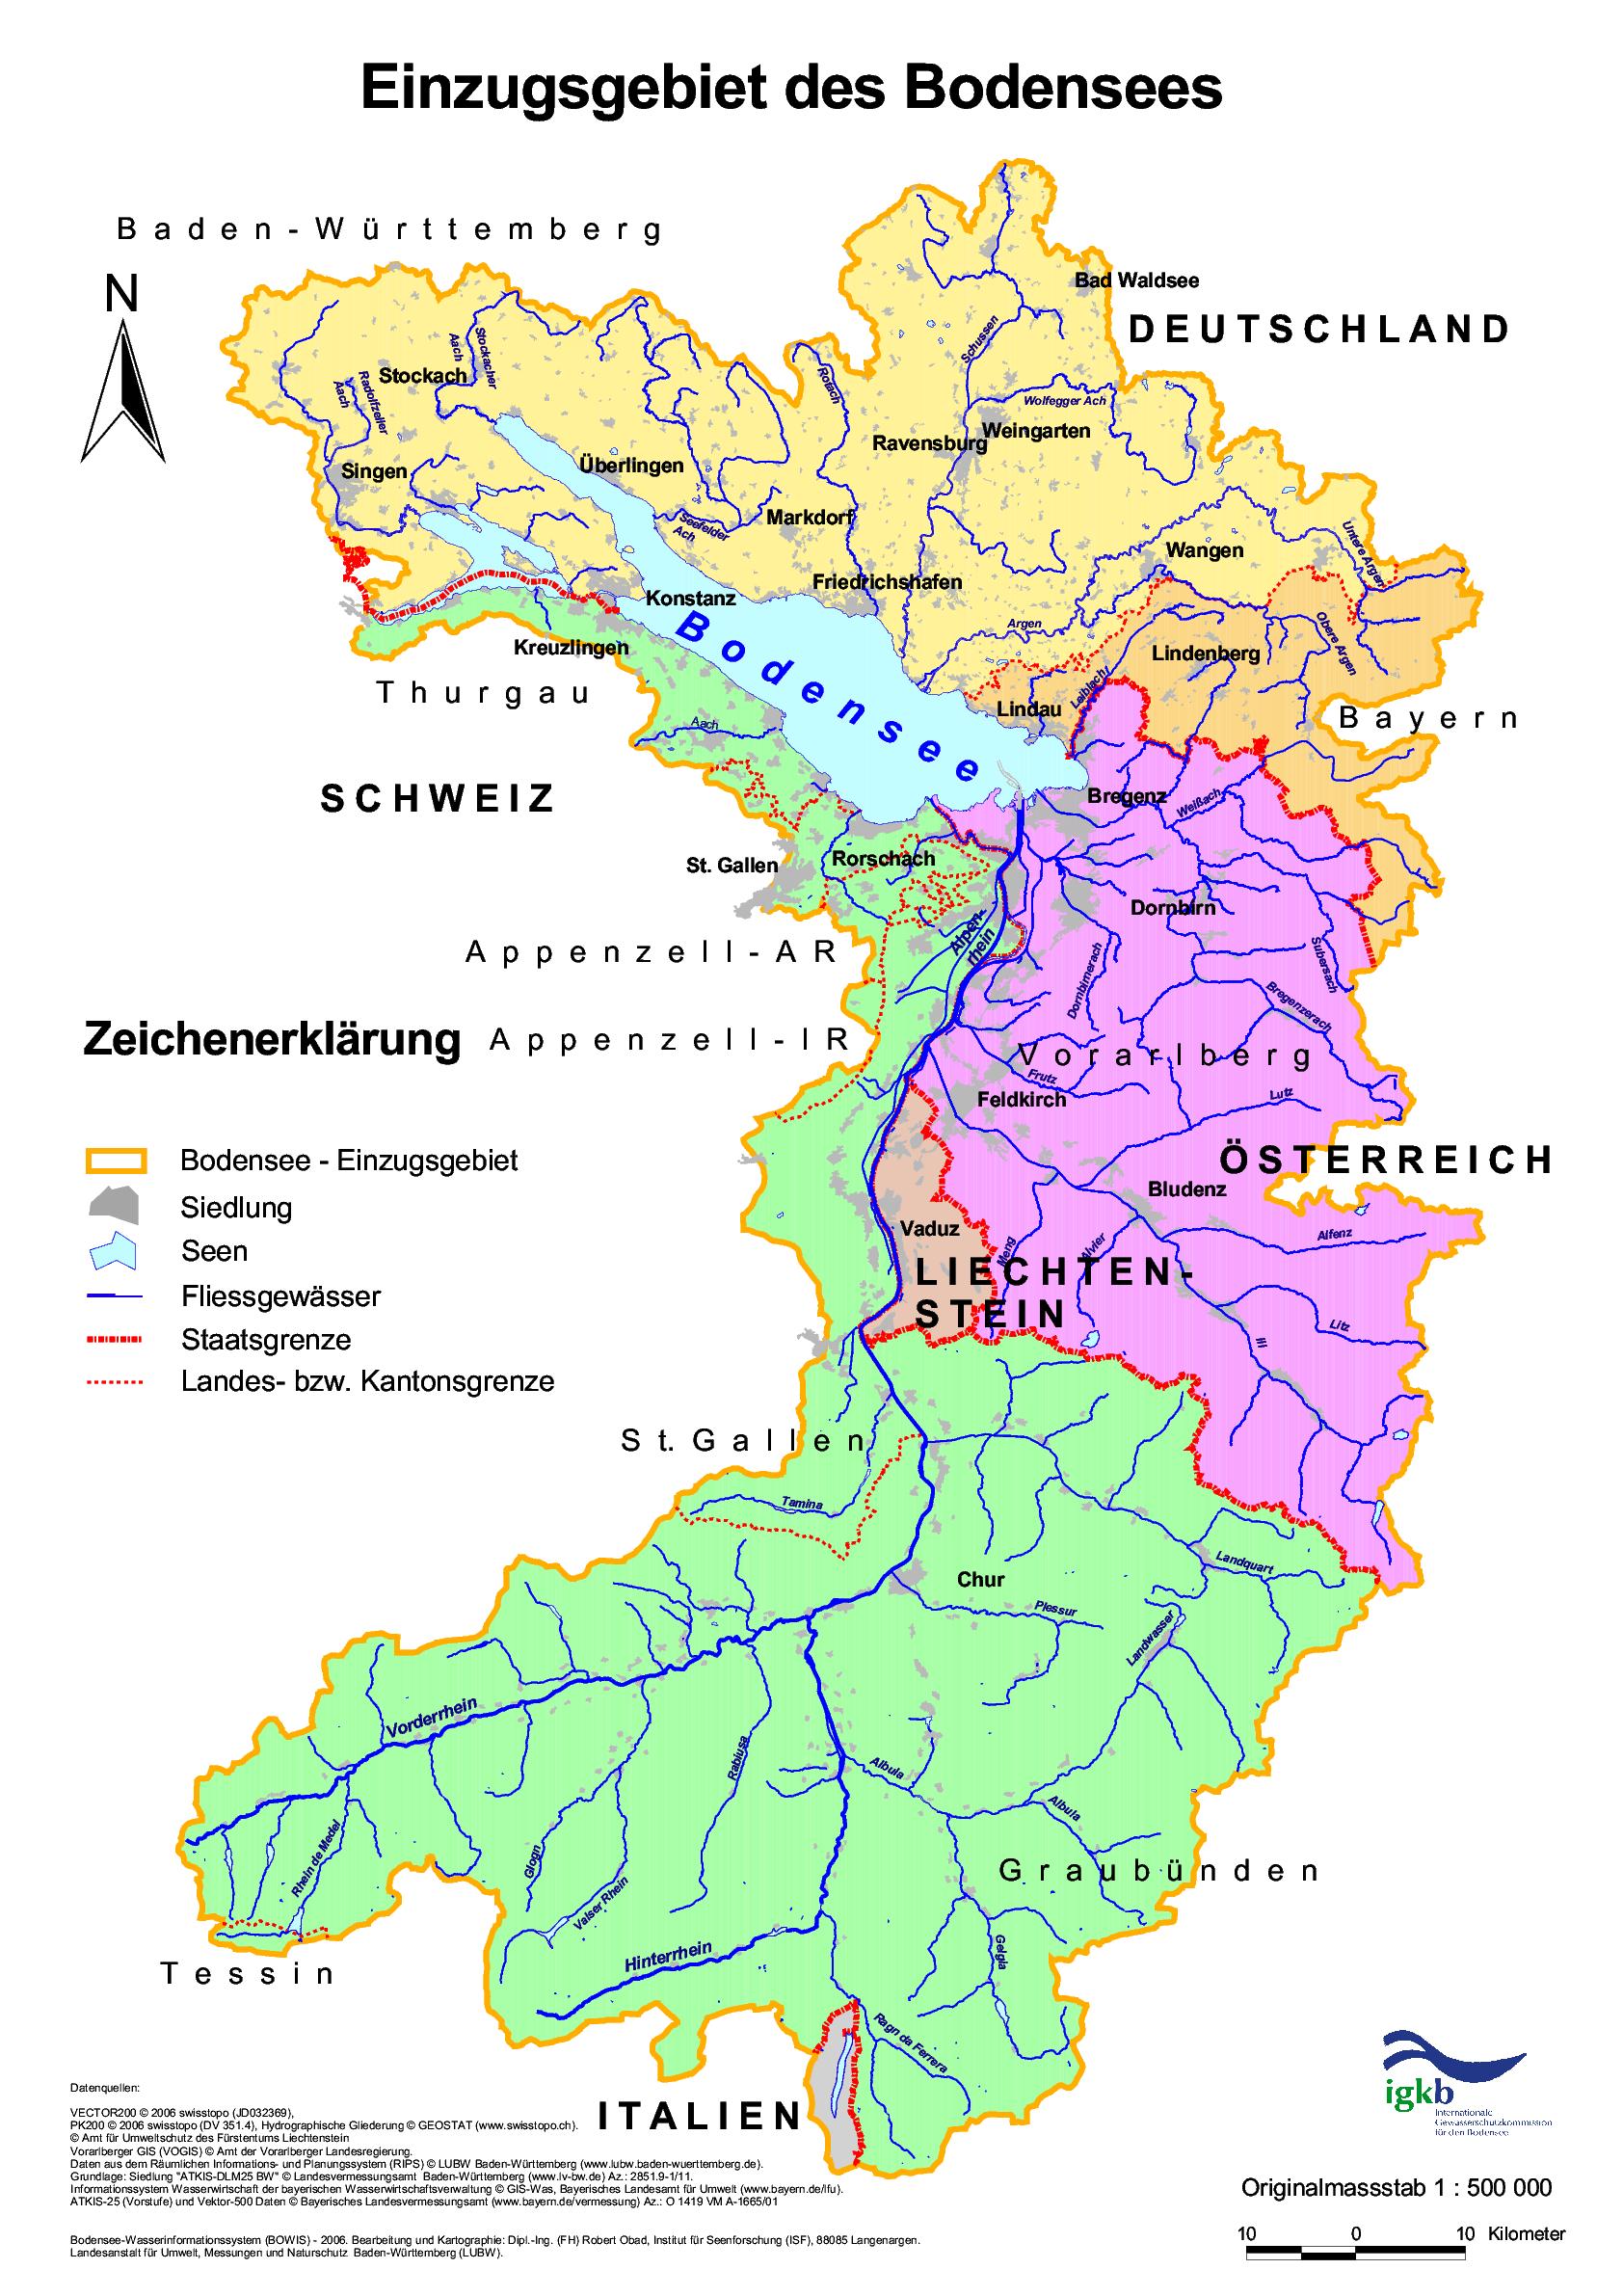 Einzugsgebiet Bodensee